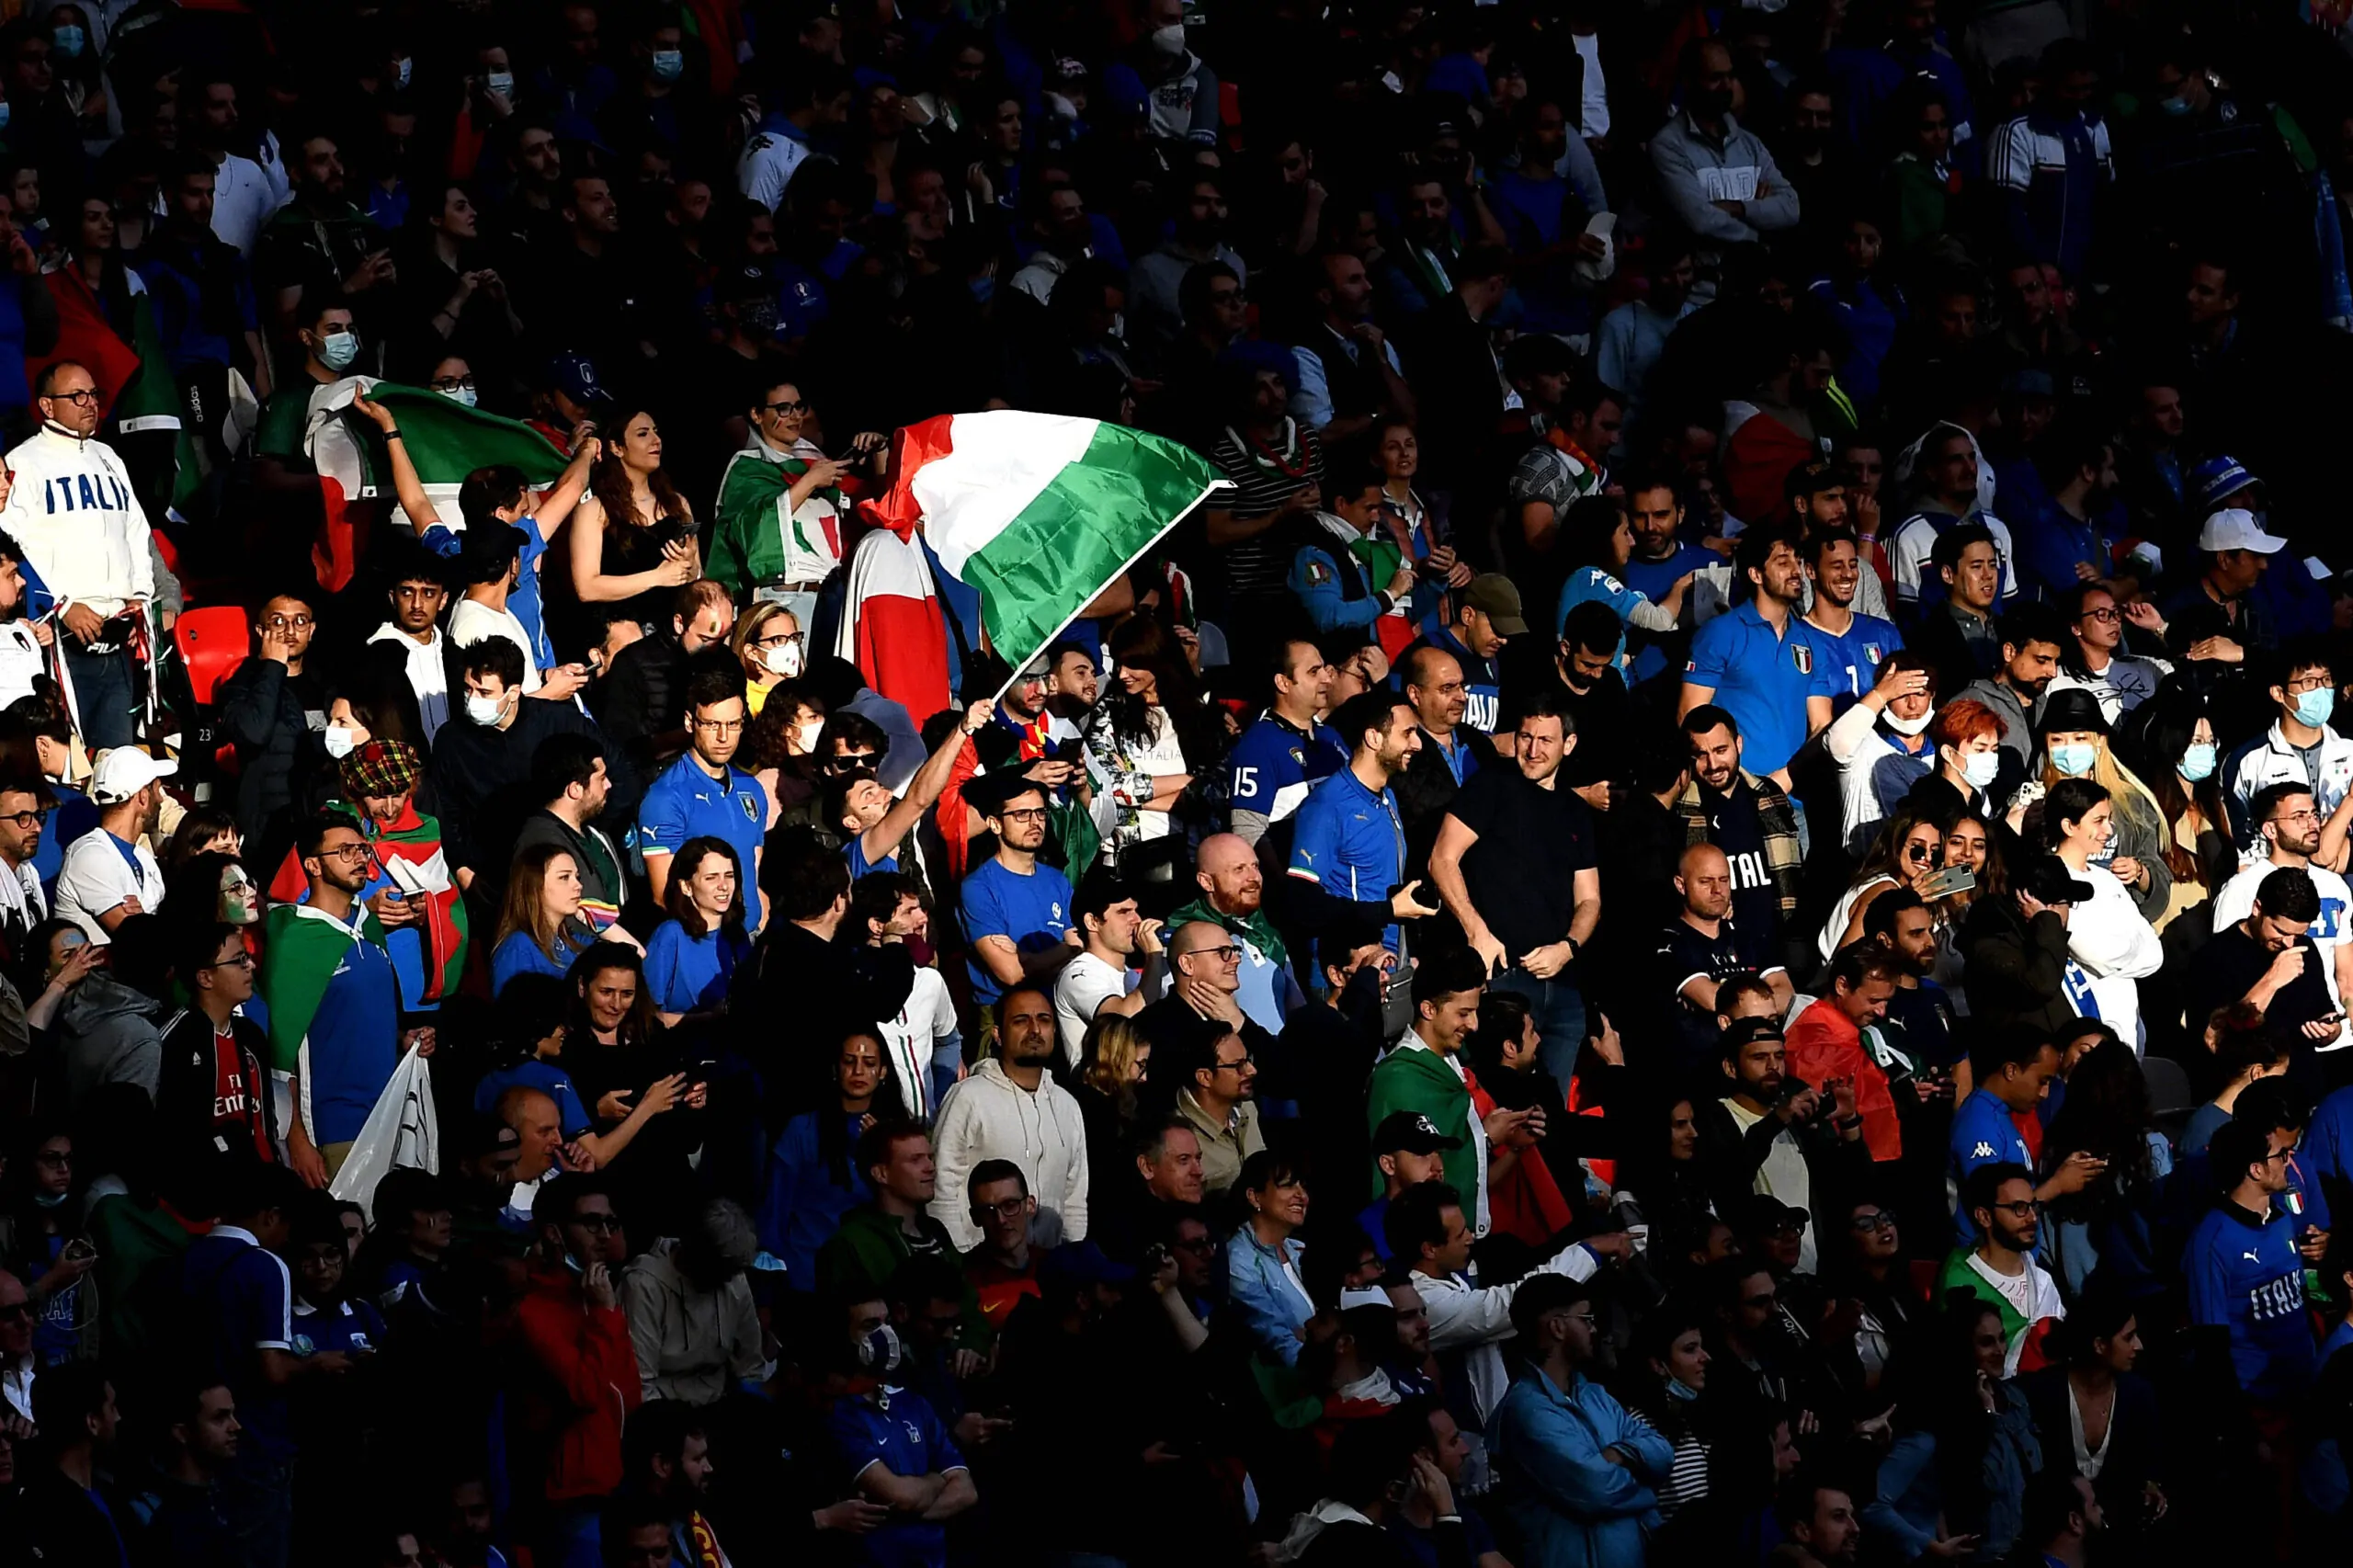 Italia-Inghilterra, quanti italiani ci saranno questa sera a Wembley? Ecco il numero esatto